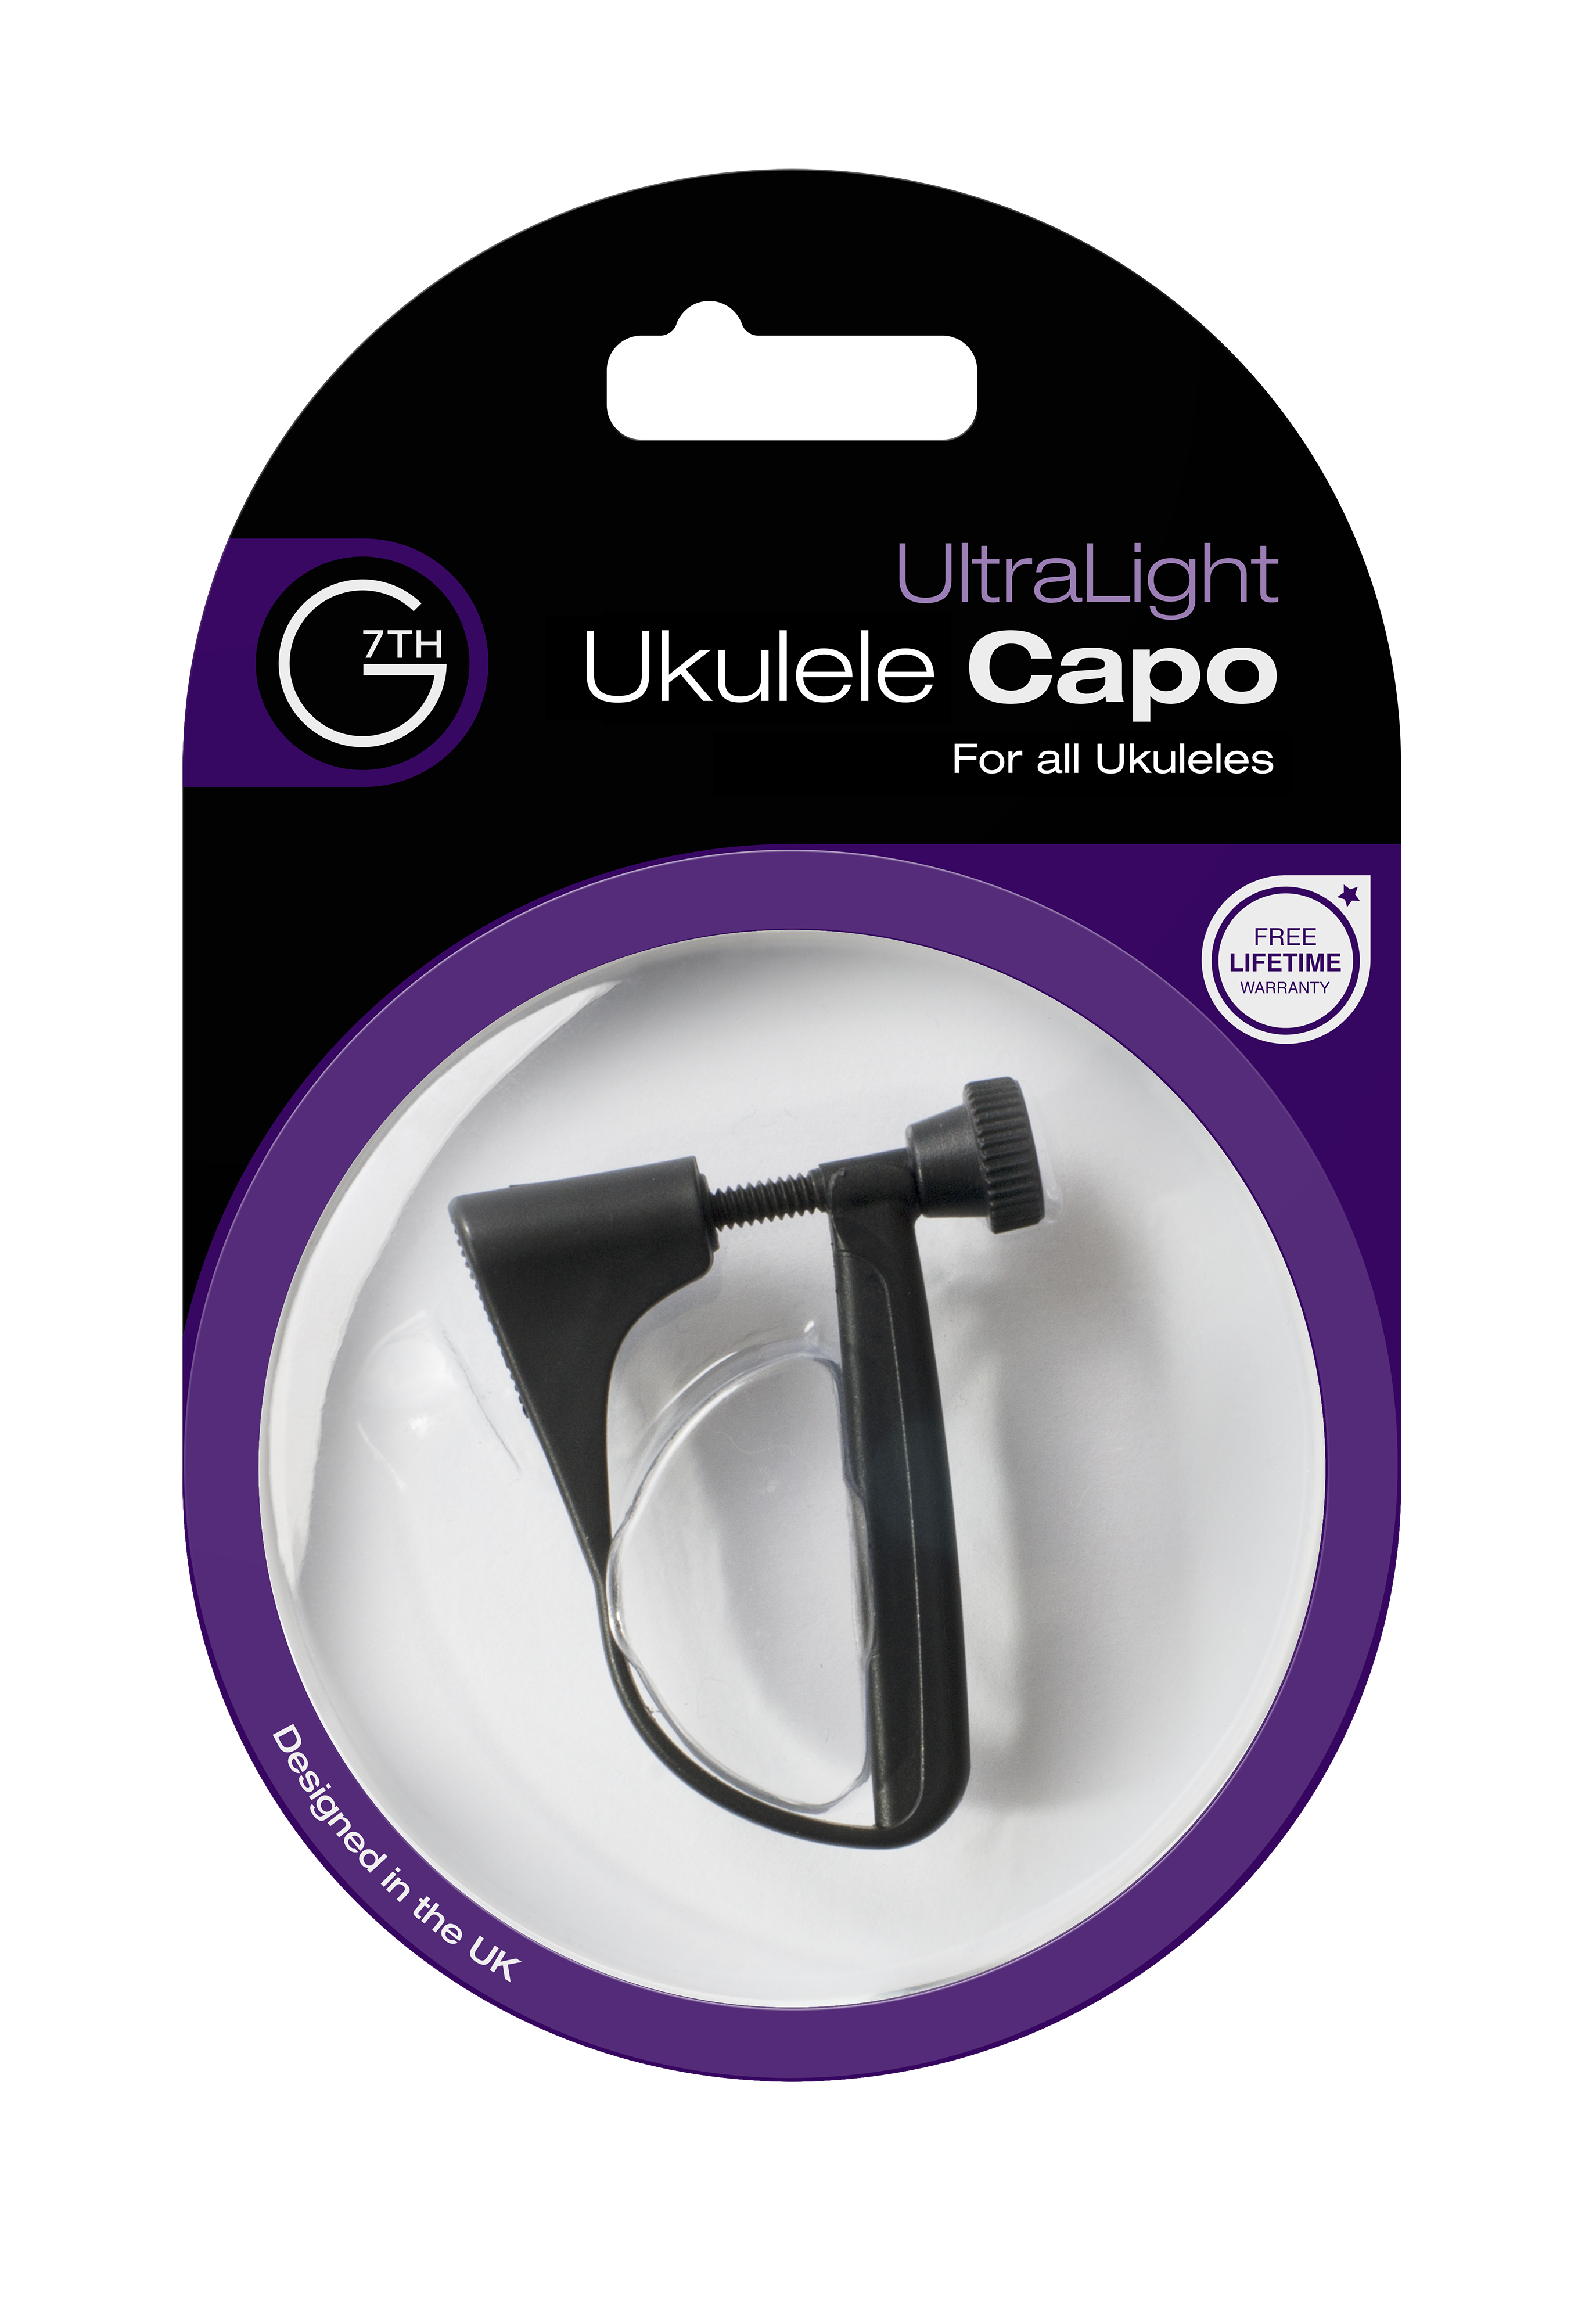 UltraLight (Ukulele Black) packaging